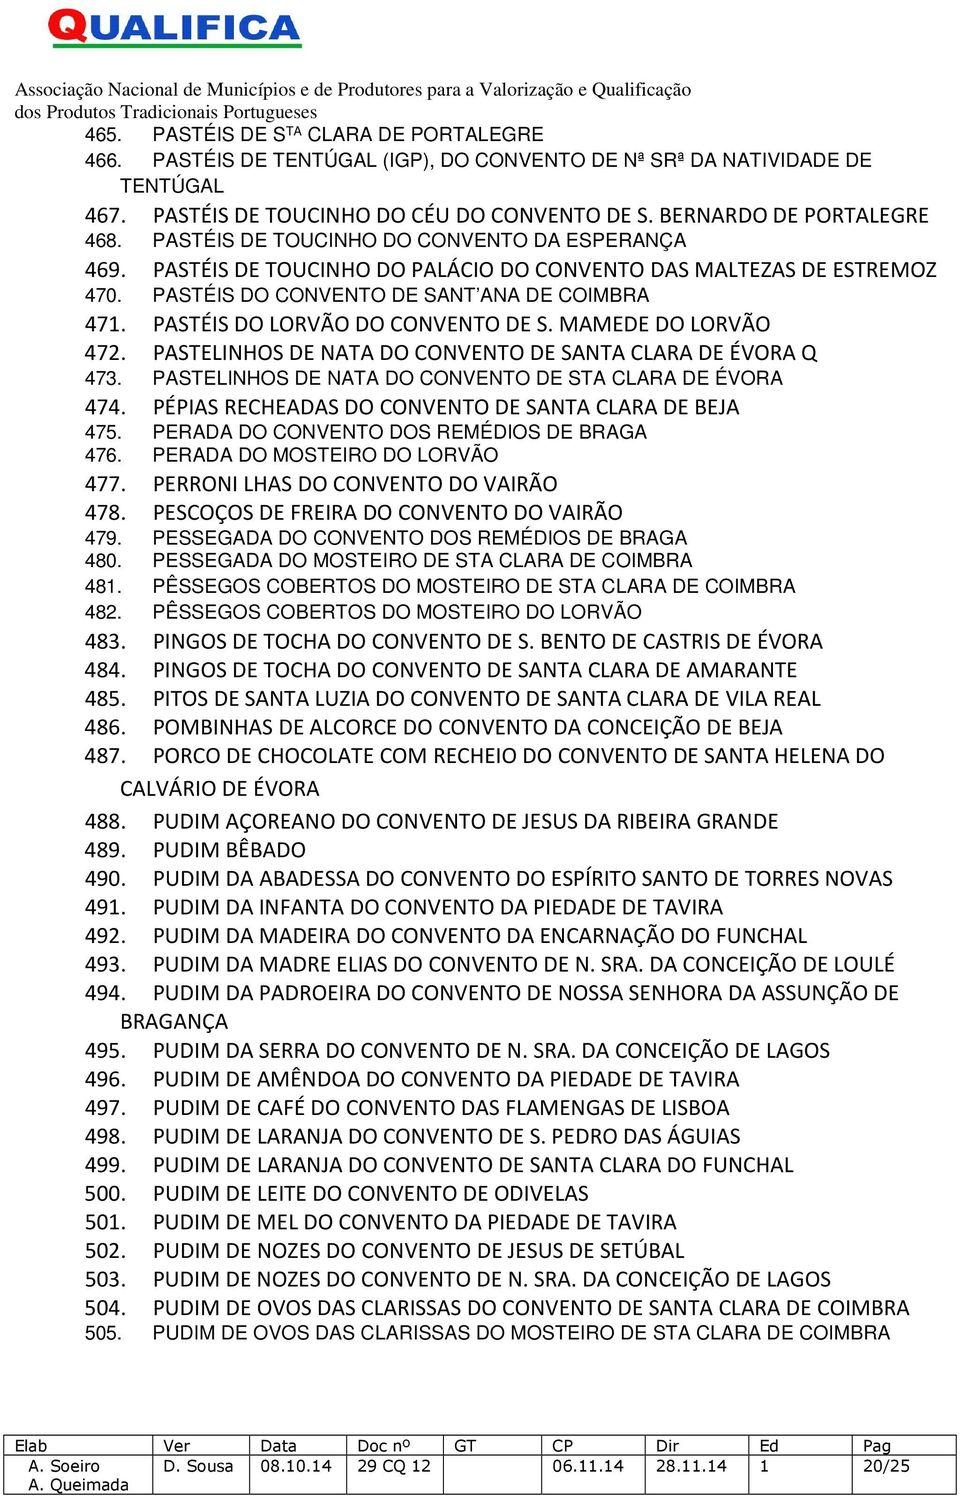 PASTÉIS DO LORVÃO DO CONVENTO DE S. MAMEDE DO LORVÃO 472. PASTELINHOS DE NATA DO CONVENTO DE SANTA CLARA DE ÉVORA Q 473. PASTELINHOS DE NATA DO CONVENTO DE STA CLARA DE ÉVORA 474.